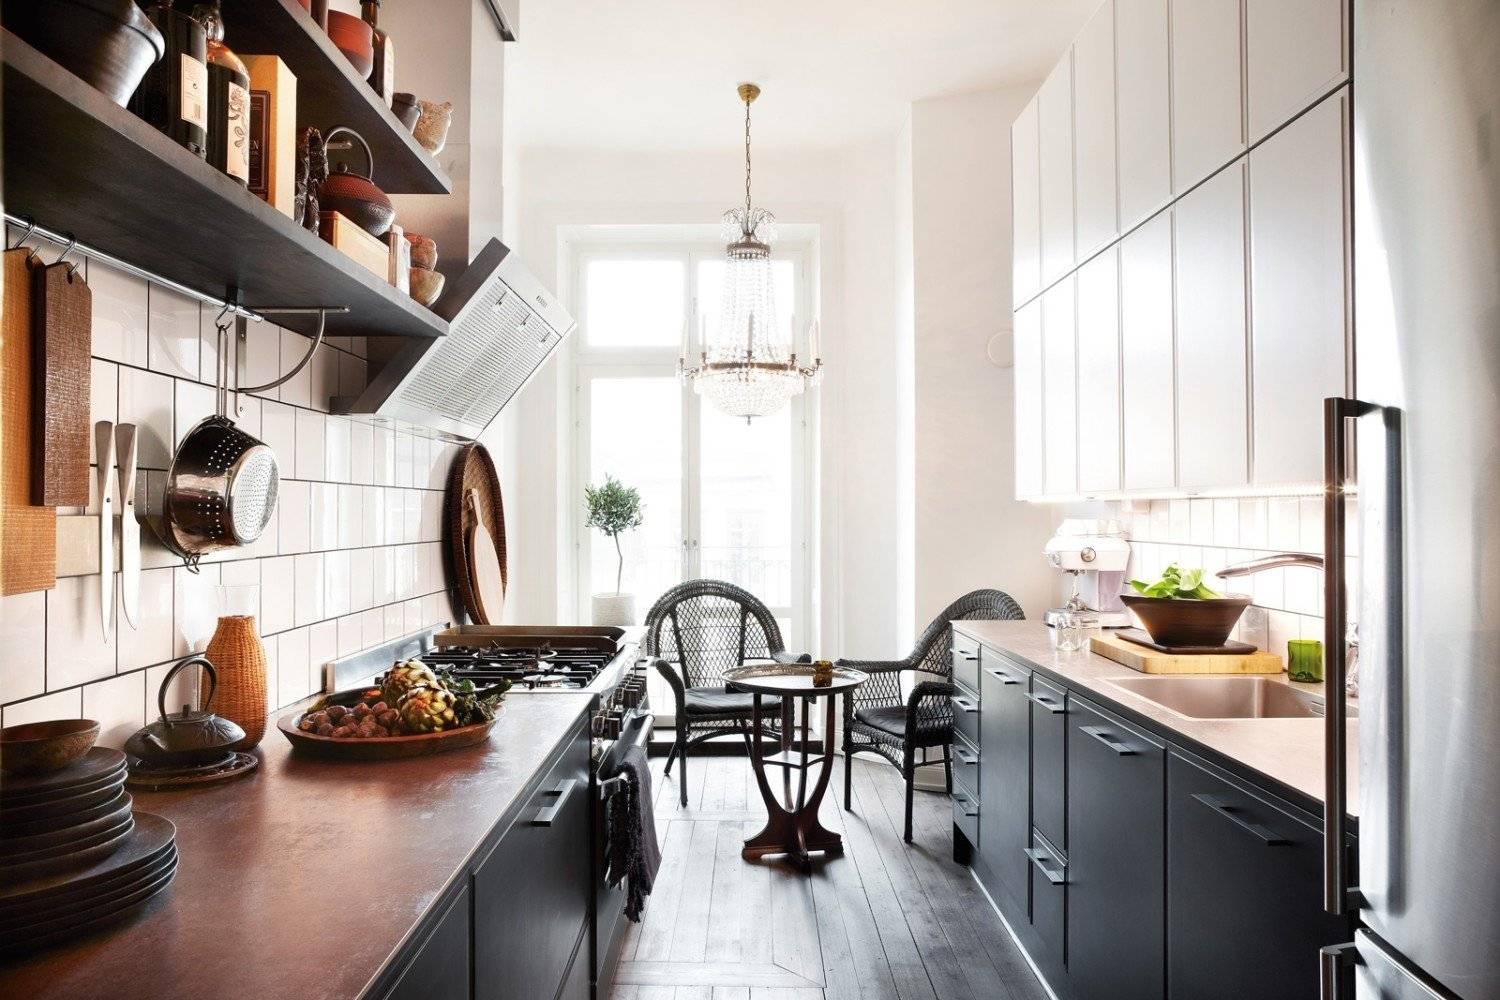 Узкая кухня — грамотная планирована, фото лучших дизайн-проектов